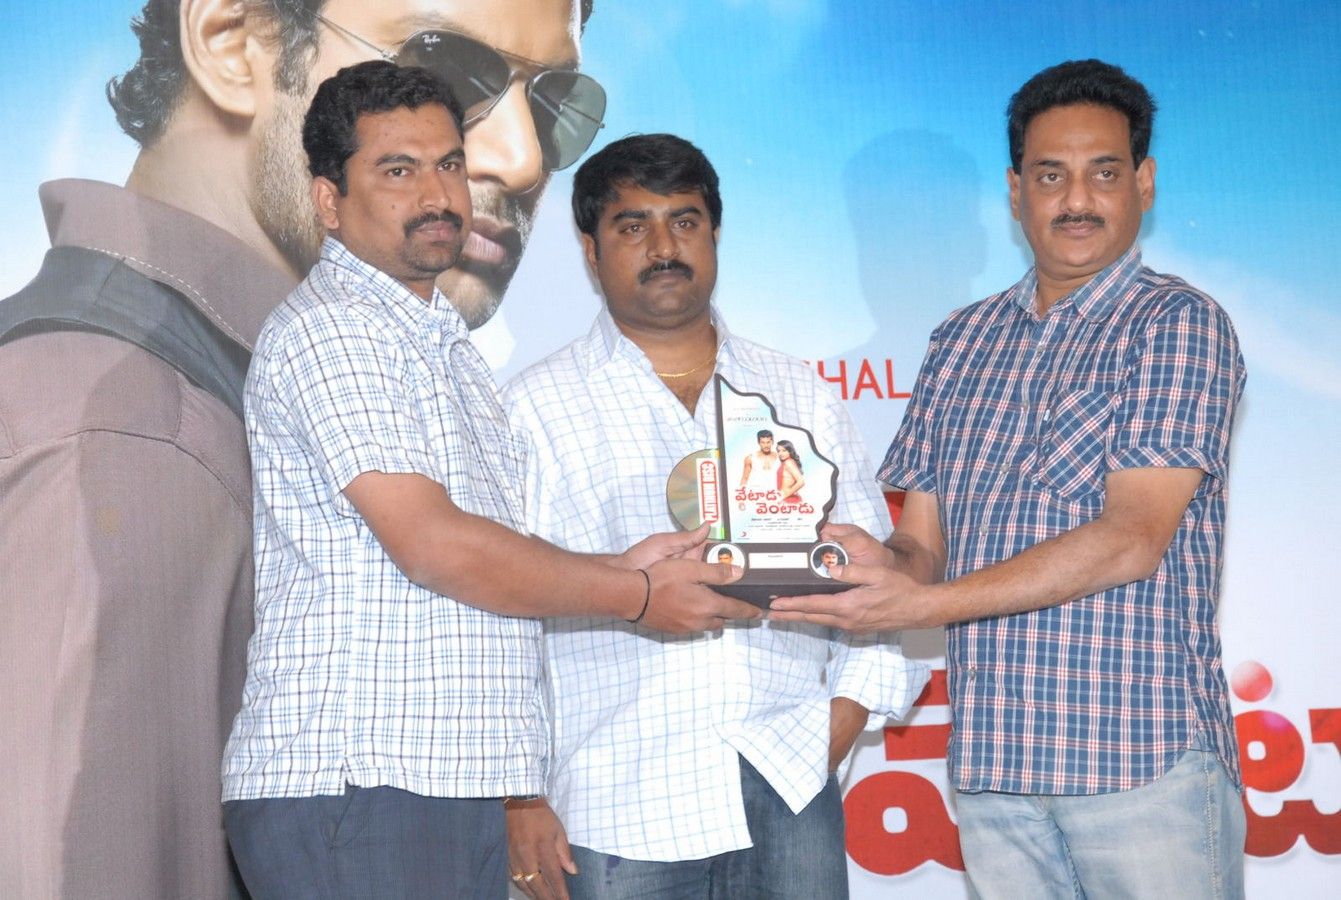 Vetadu Ventadu Movie Platinum Disc Function Pictures | Picture 367245